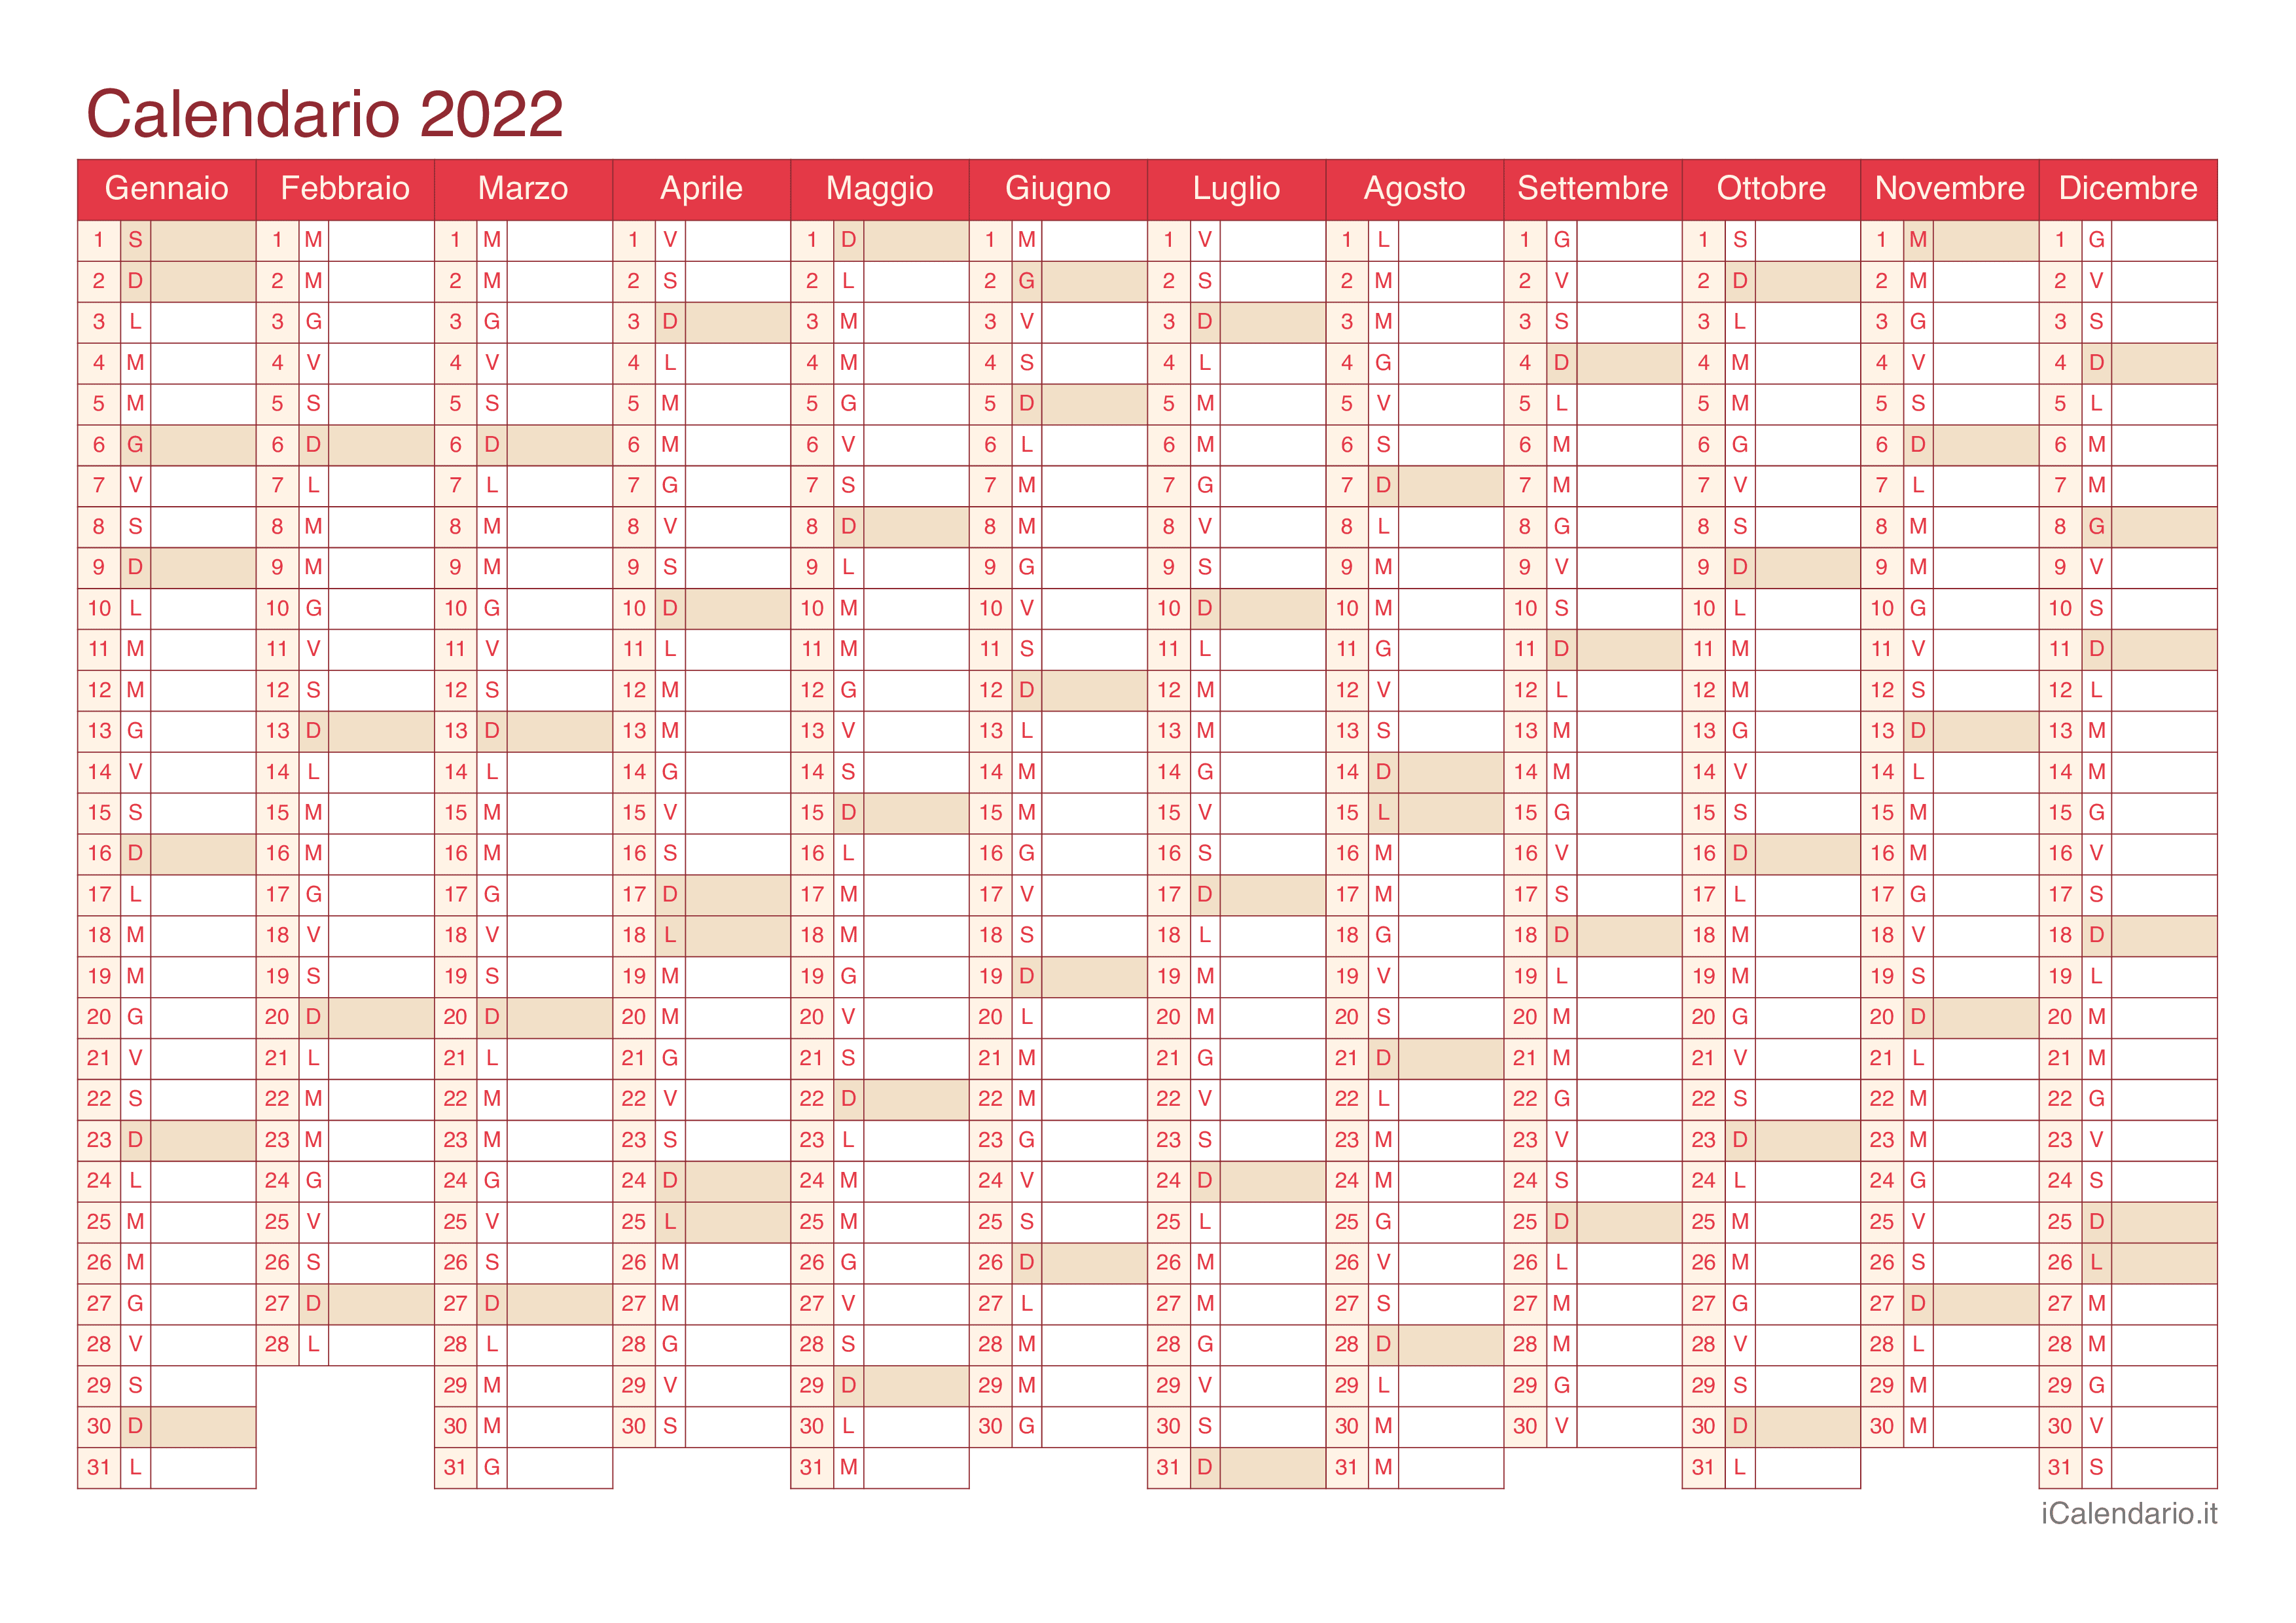 Calendario 2022 - Cherry